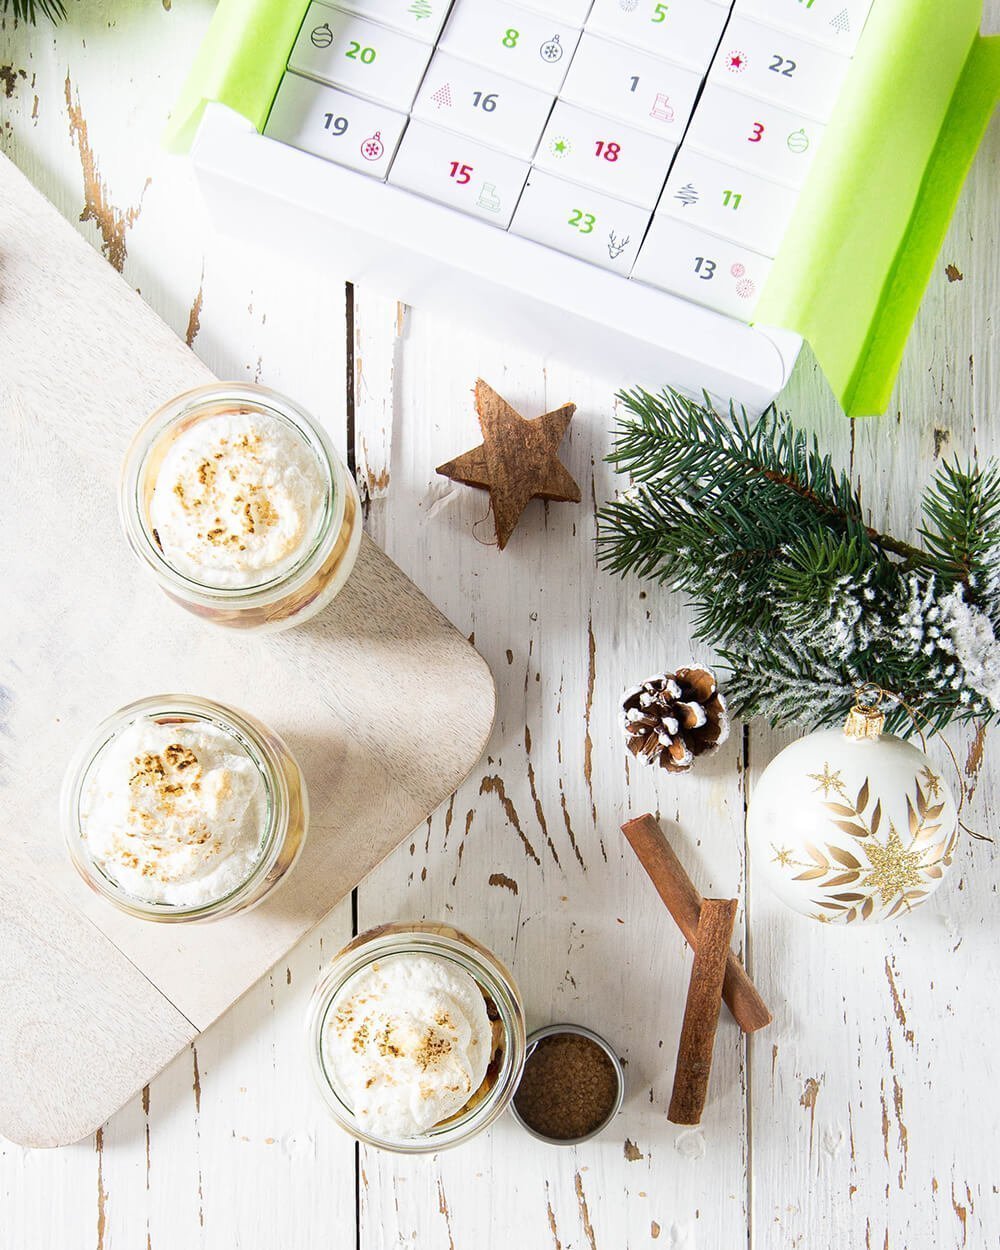 Vanillecreme mit Bratapfeltopping und Baiserhaube gewürzt mit dem Bratapfelgewürz aus dem Adventskalender von Zauber der Gewürze